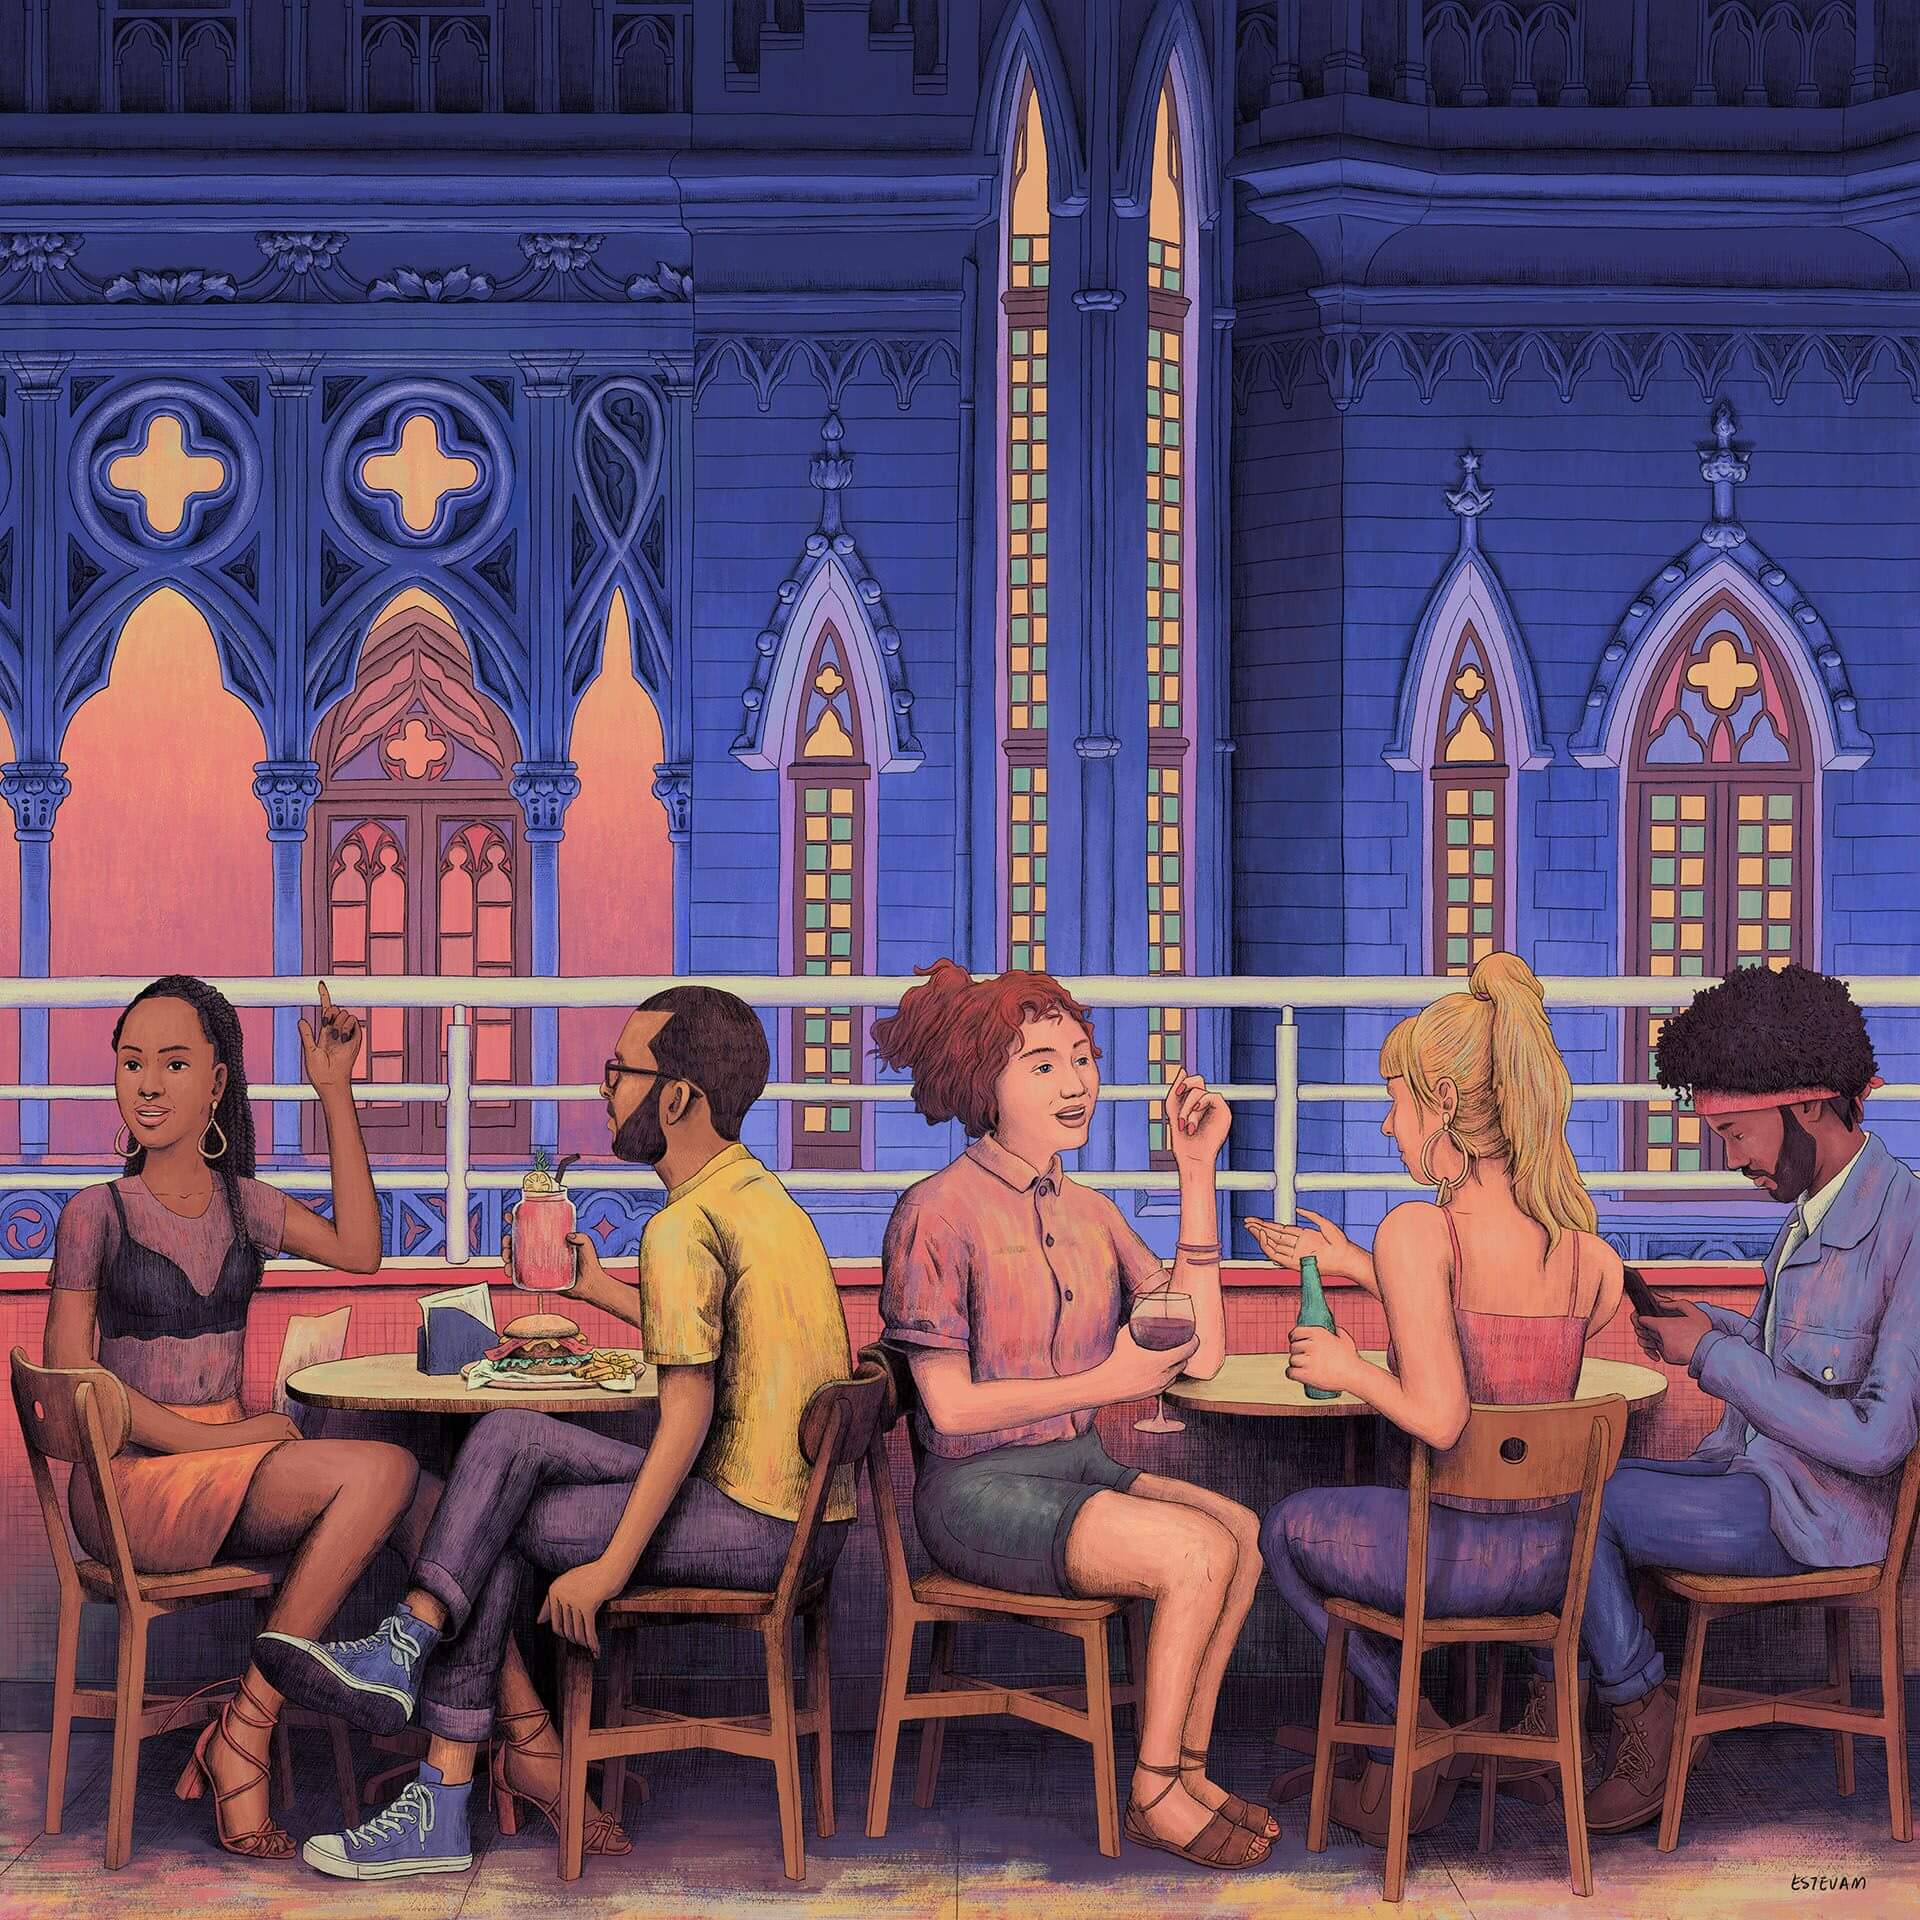 Ilustração de pessoas bebendo e conversando na varanda do edifício Maletta.